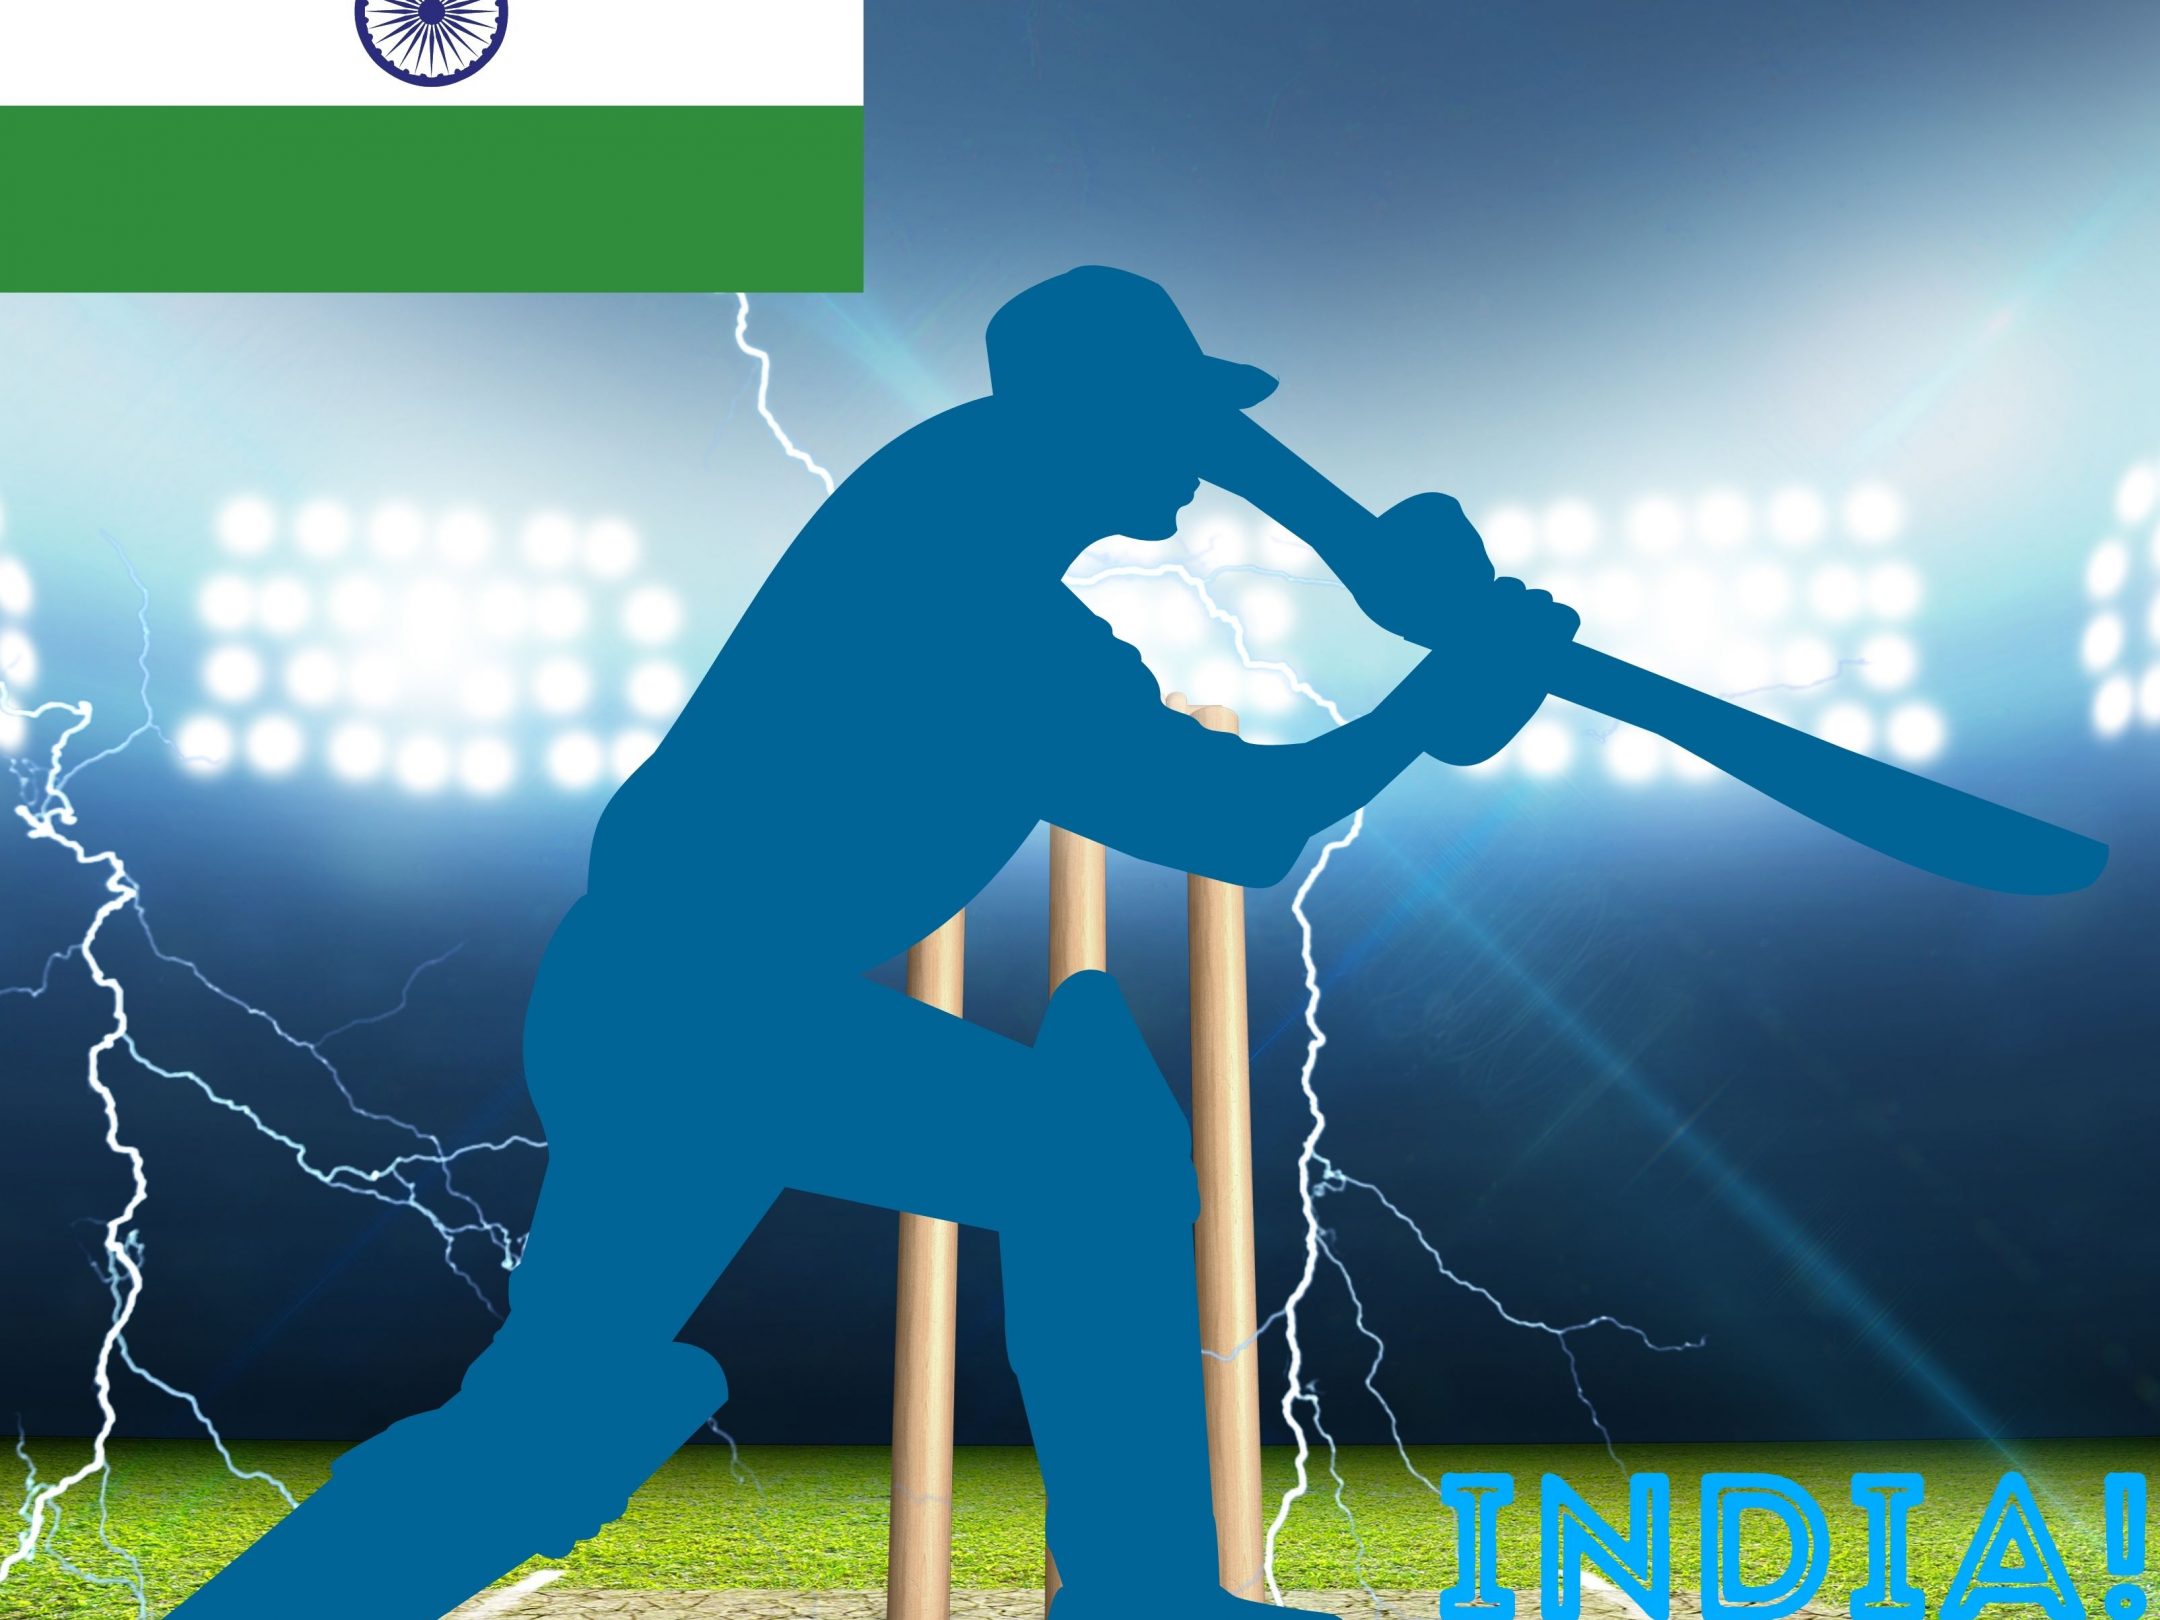 2160x1620 iPad wallpaper 4k India Cricket Stadium iPad Wallpaper 2160x1620 pixels resolution